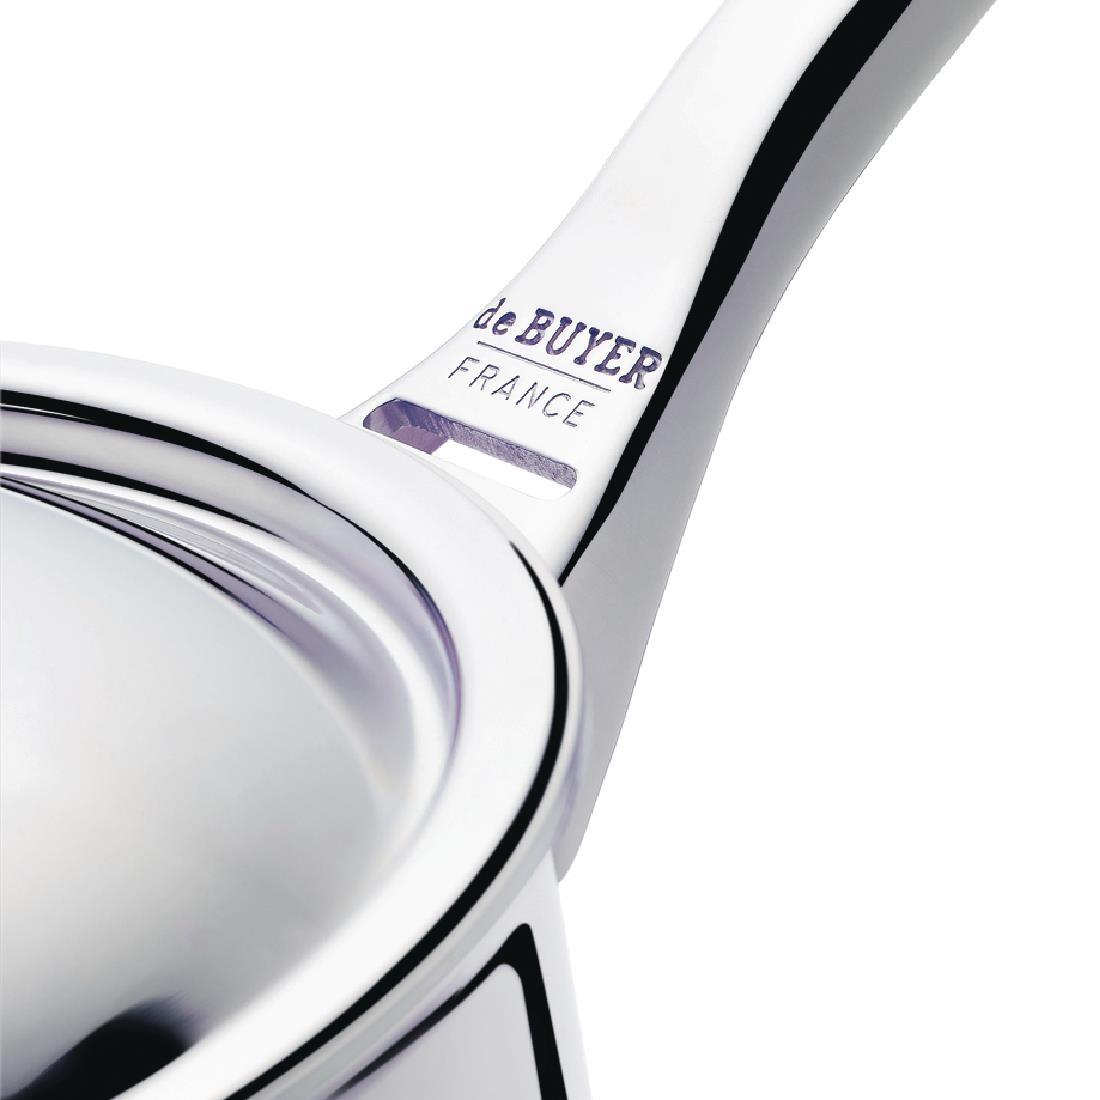 De Buyer Affinity Conical Saute Pan 24cm - CY363  - 3